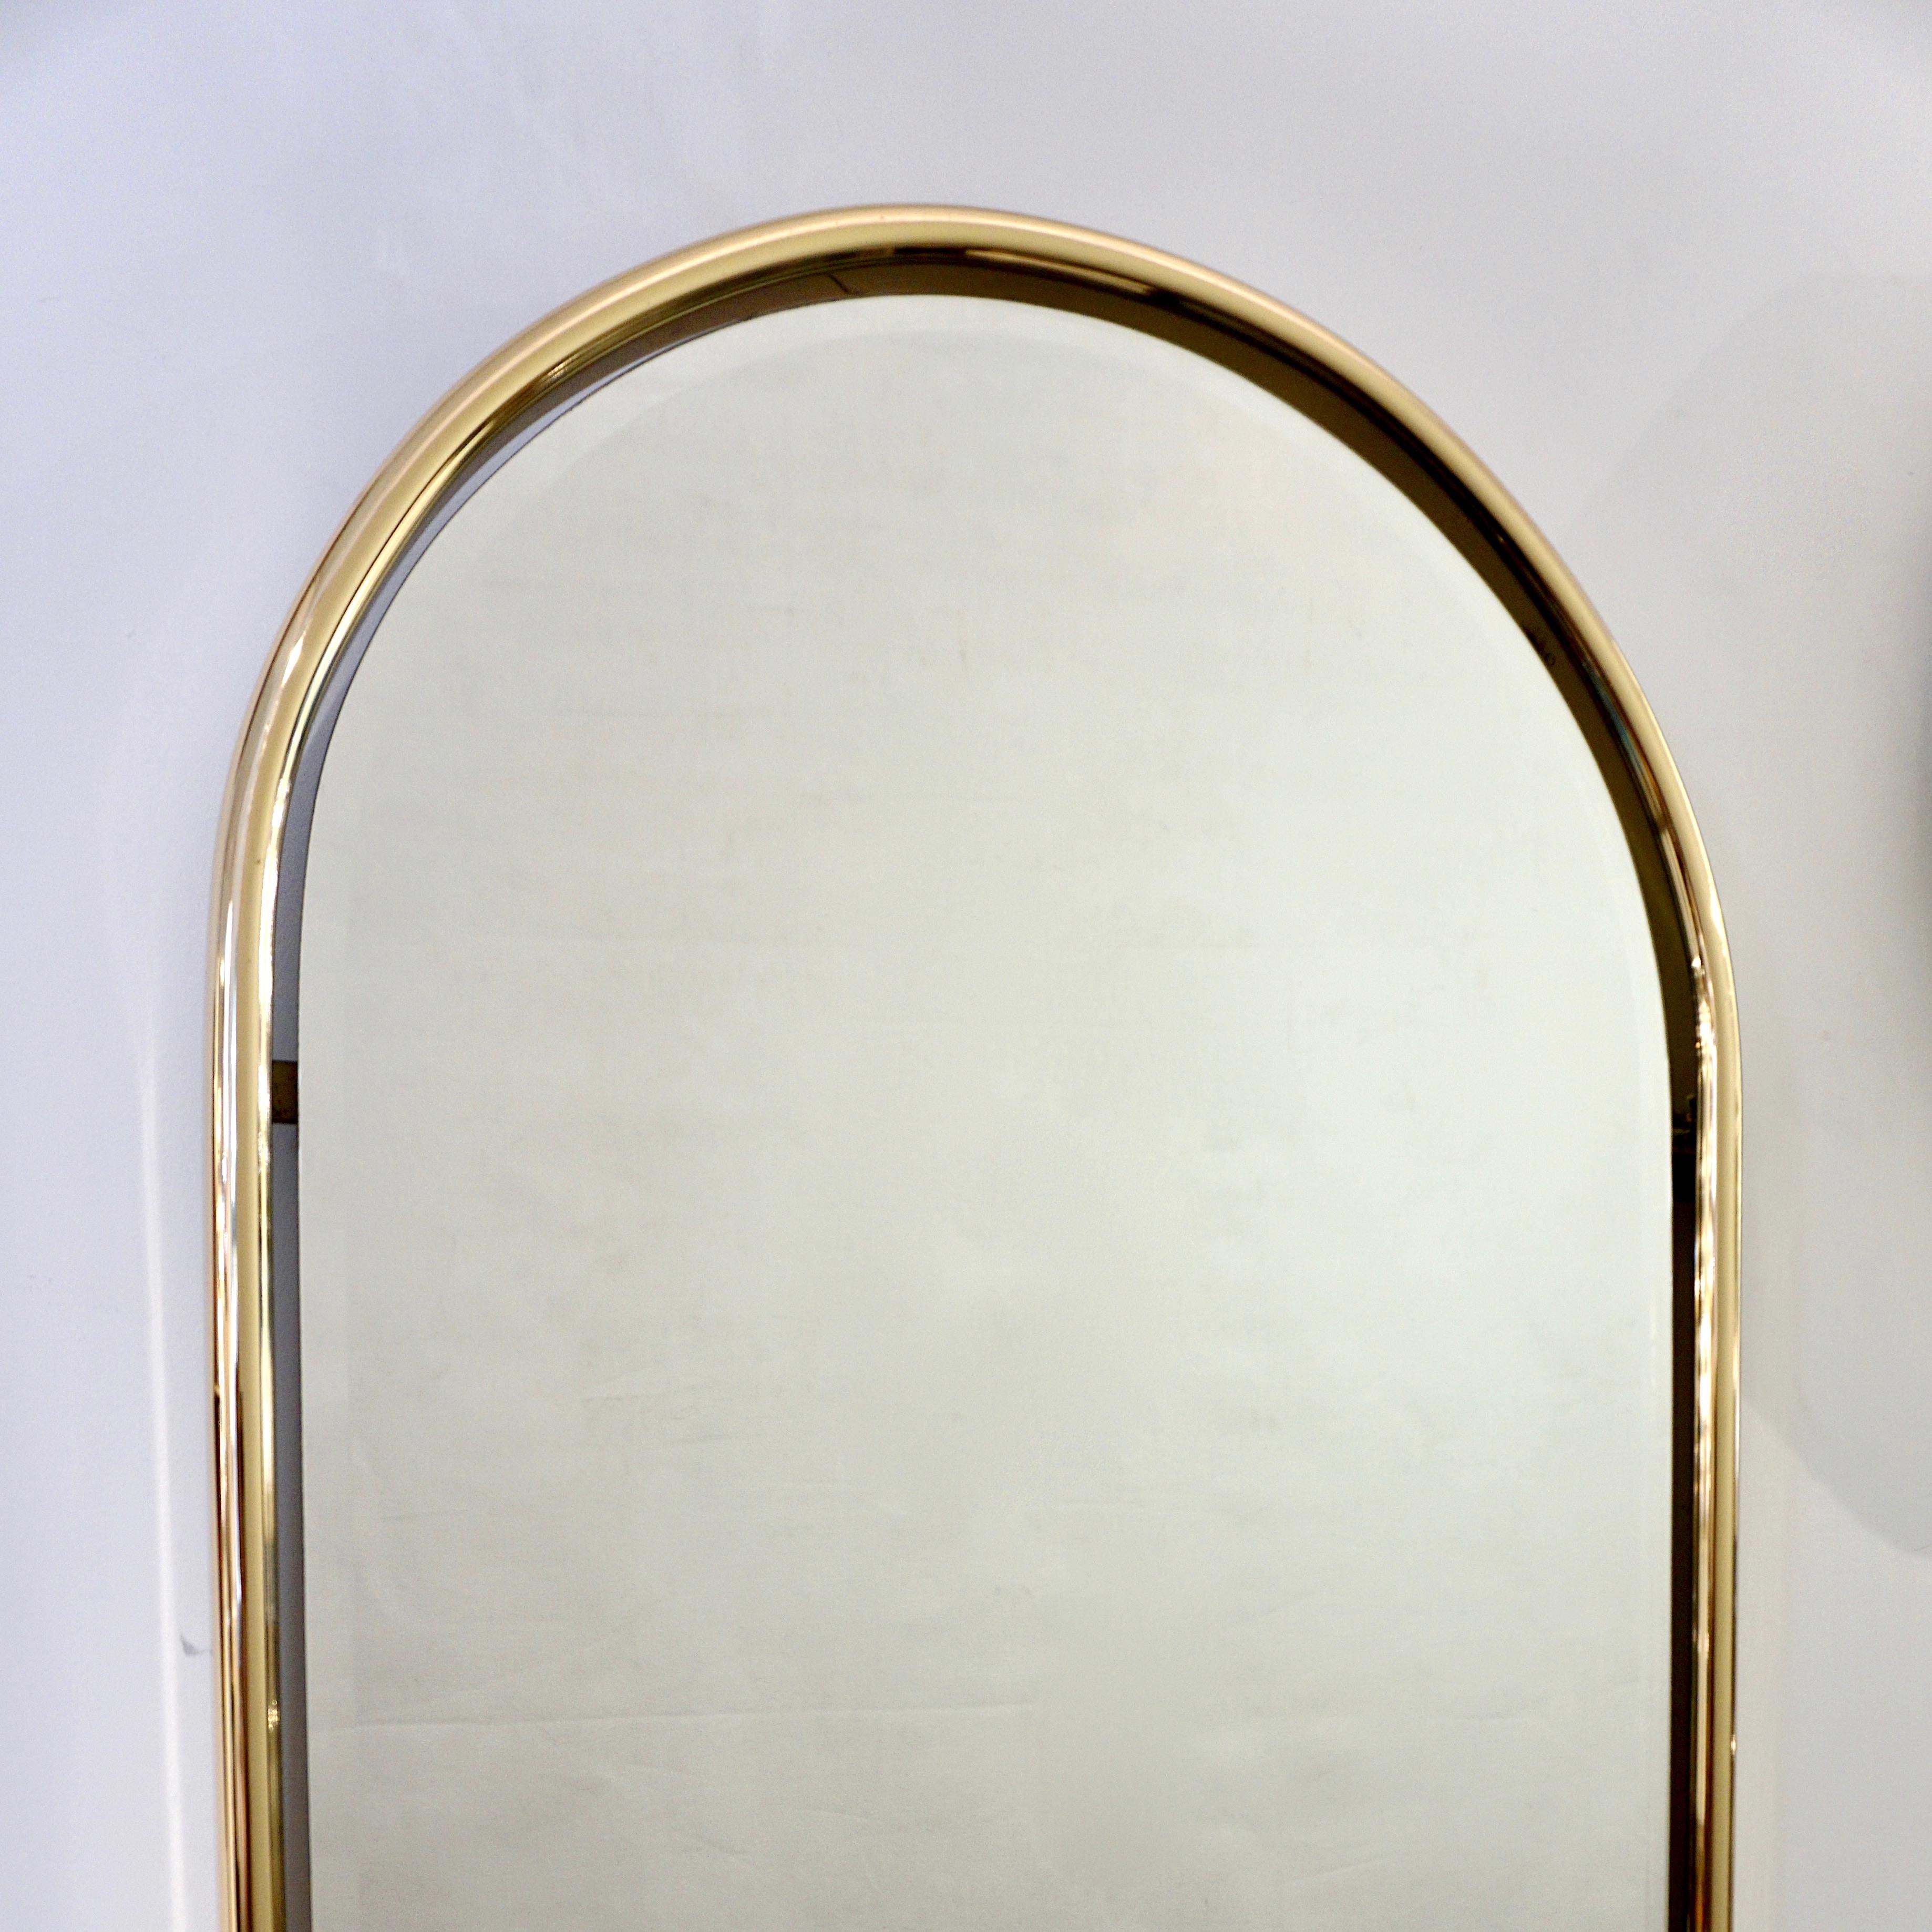 3 disponibles - Miroir italien vintage Art Deco fabriqué à la main avec un élégant cadre en laiton au sommet arrondi renfermant un miroir détaché créant un effet de flottement.
La plaque de miroir se termine par un bord arrondi biseauté sophistiqué,